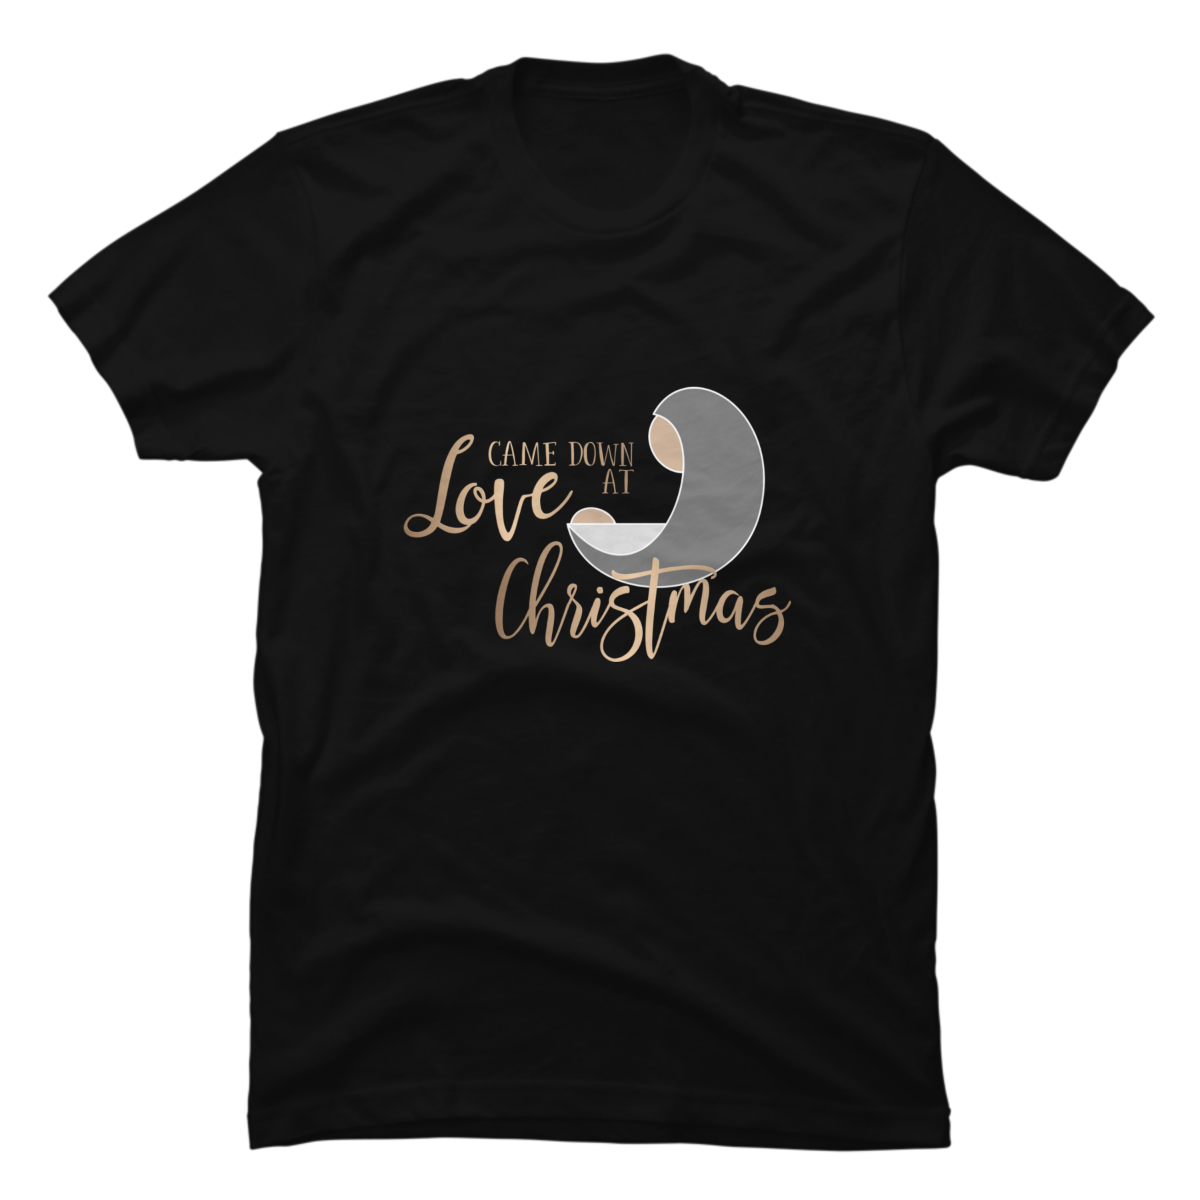 christian christmas shirt designs